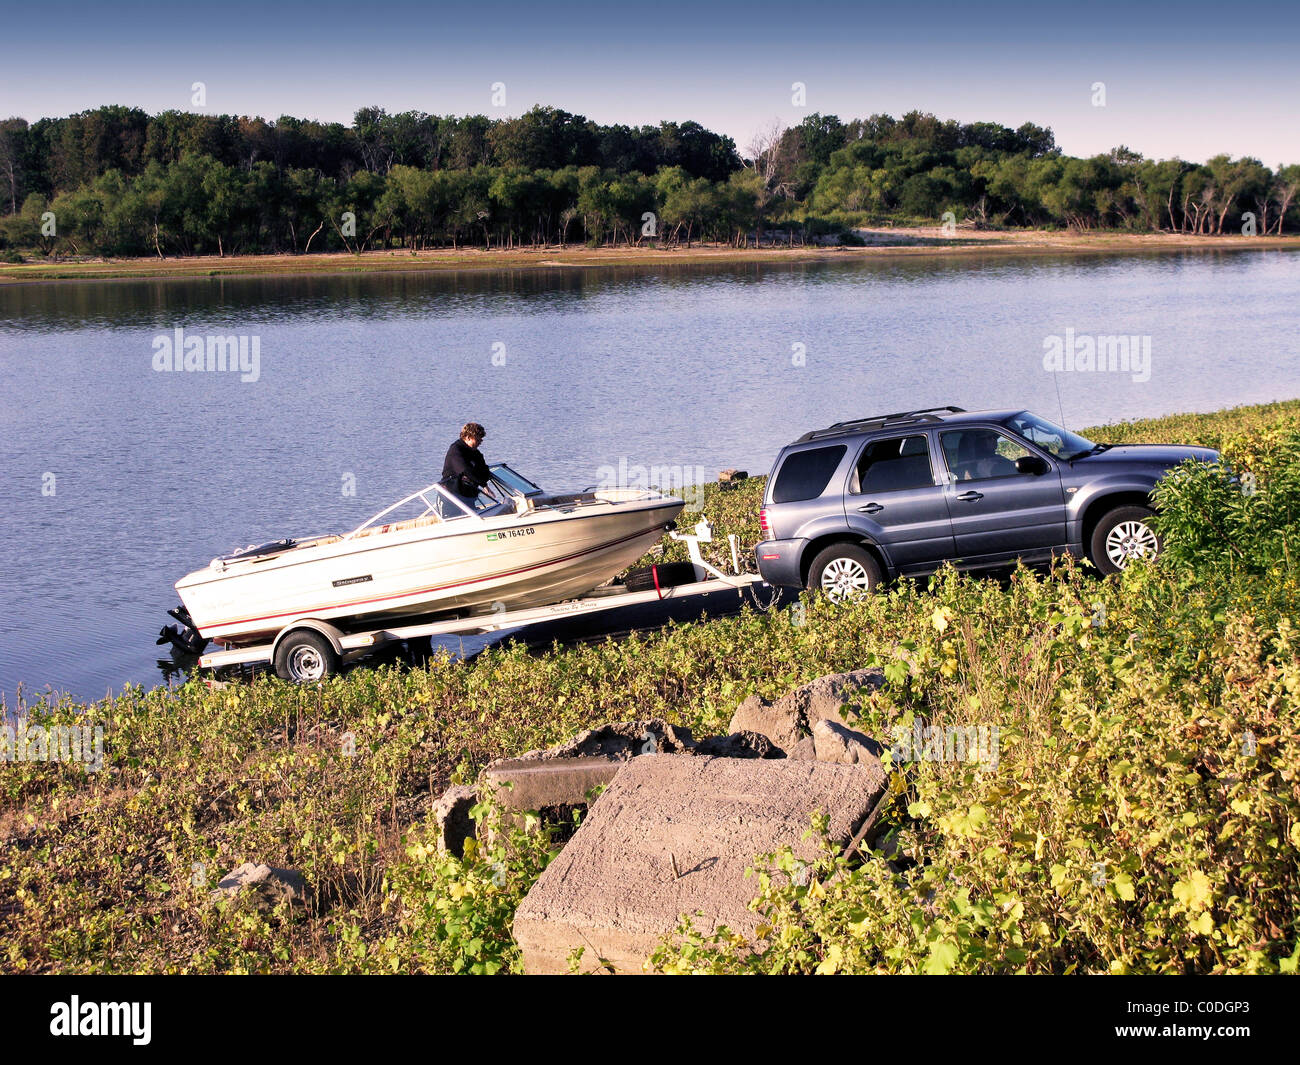 Une femme se prépare à mettre son bateau à l'eau d'un lac dans la région de New York, USA. Banque D'Images